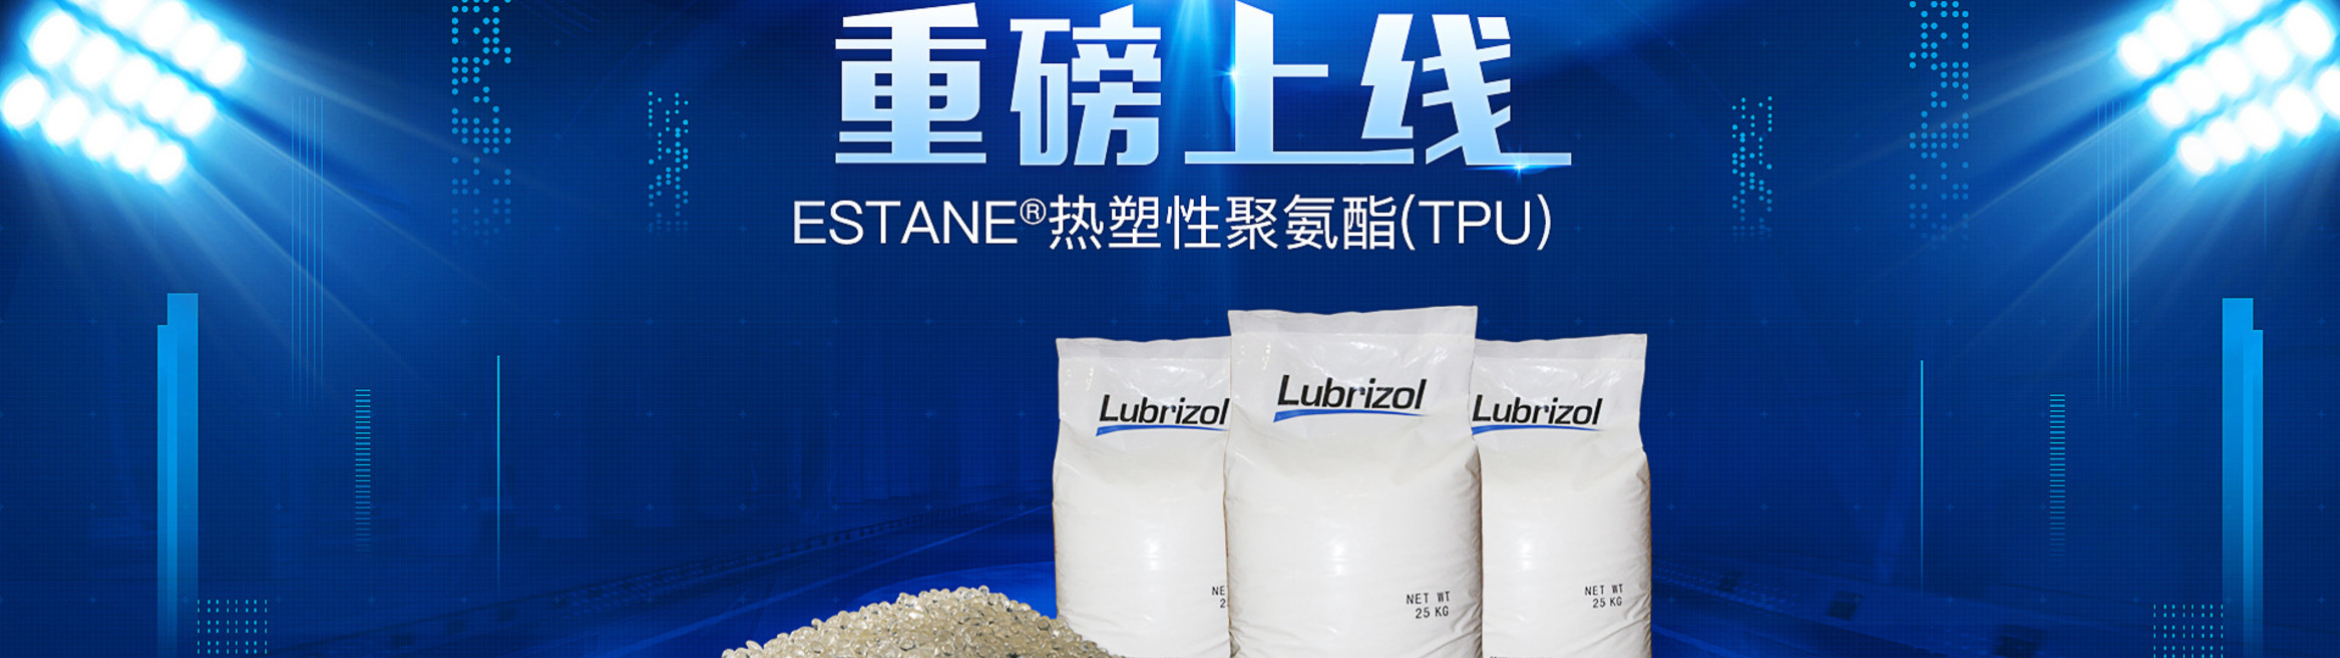 ESTANE®热塑性聚氨酯现可在中国进行在线购买